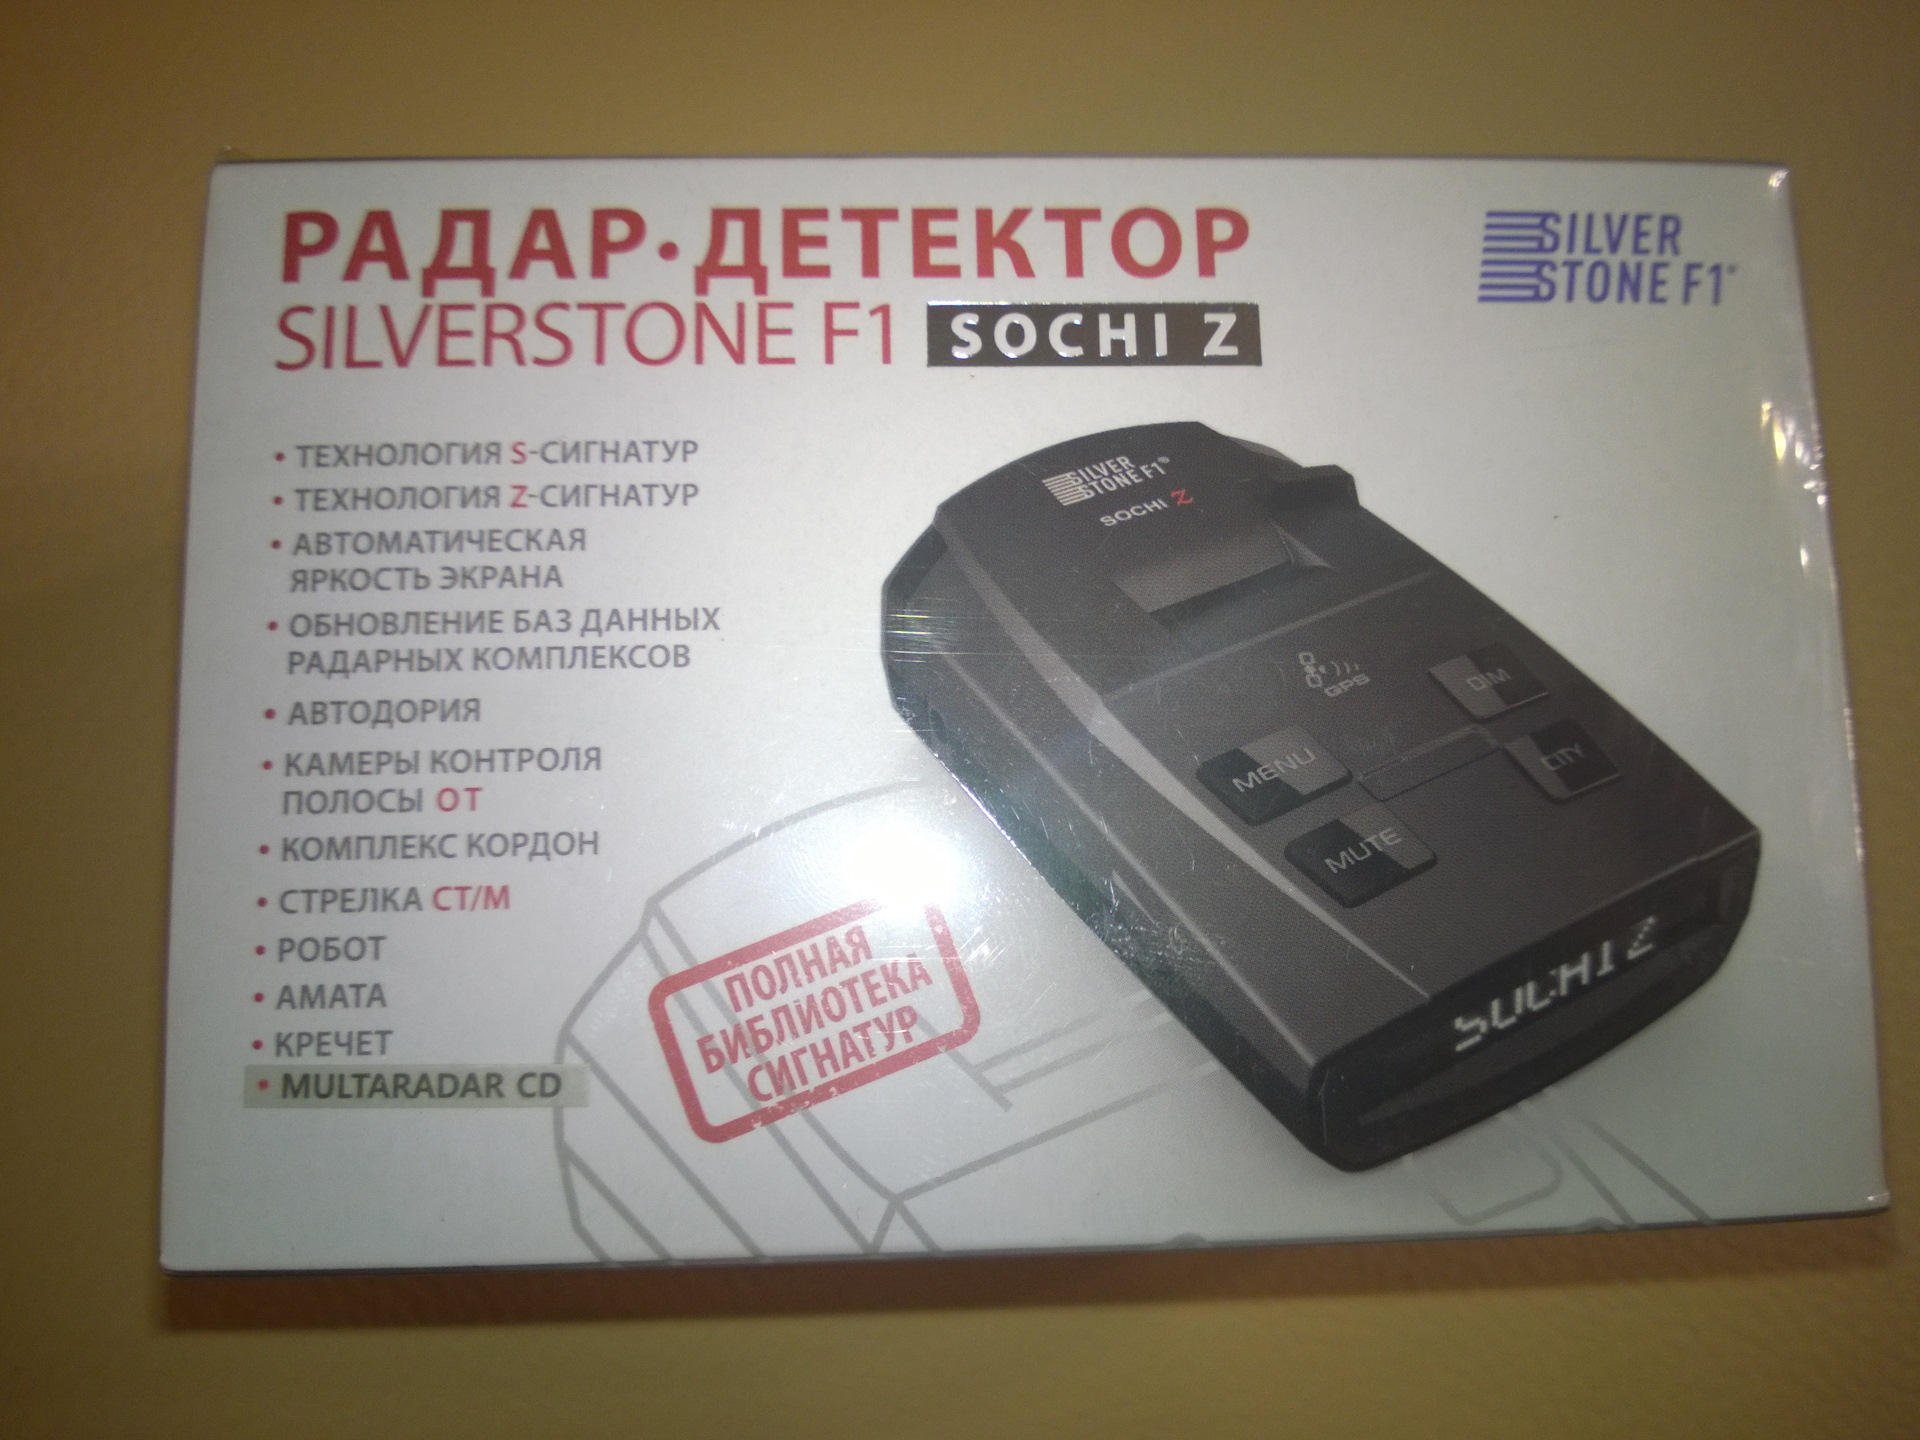 Обновить базы радар детектора. Антирадар в Москве купить бу недорого на авито в Москве.